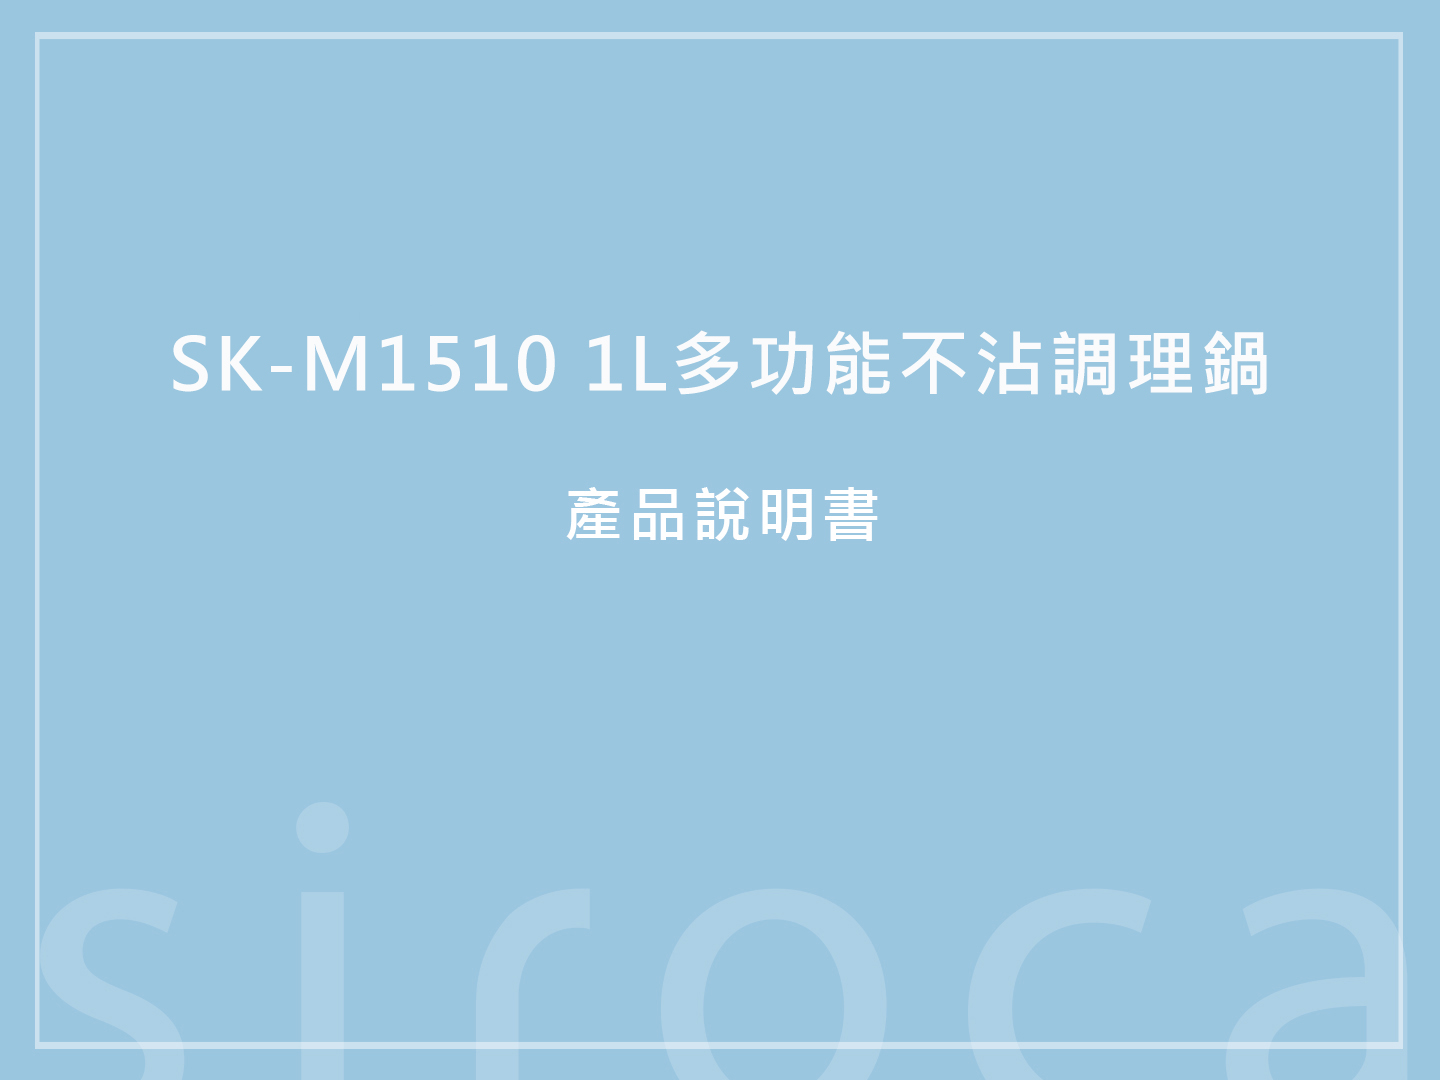 【產品說明書】SK-M1510 1L多功能不沾 說明書下載